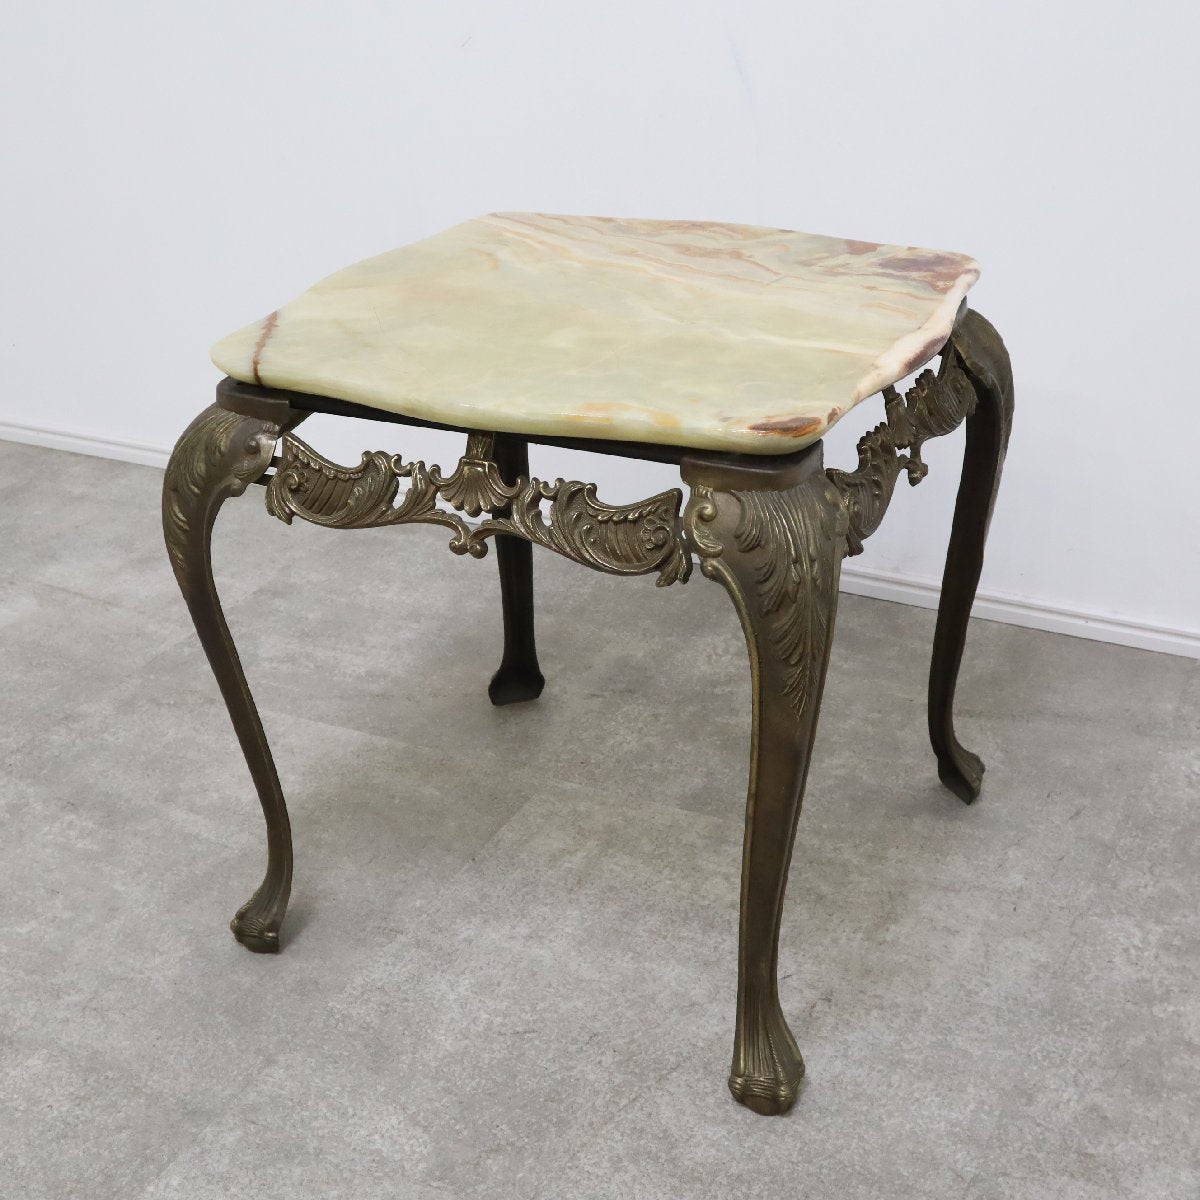 【引取限定】アンティーク 大理石 花台 オニキス テーブル サイドテーブル ナイトテーブル 猫脚 ロココ様式 真鍮